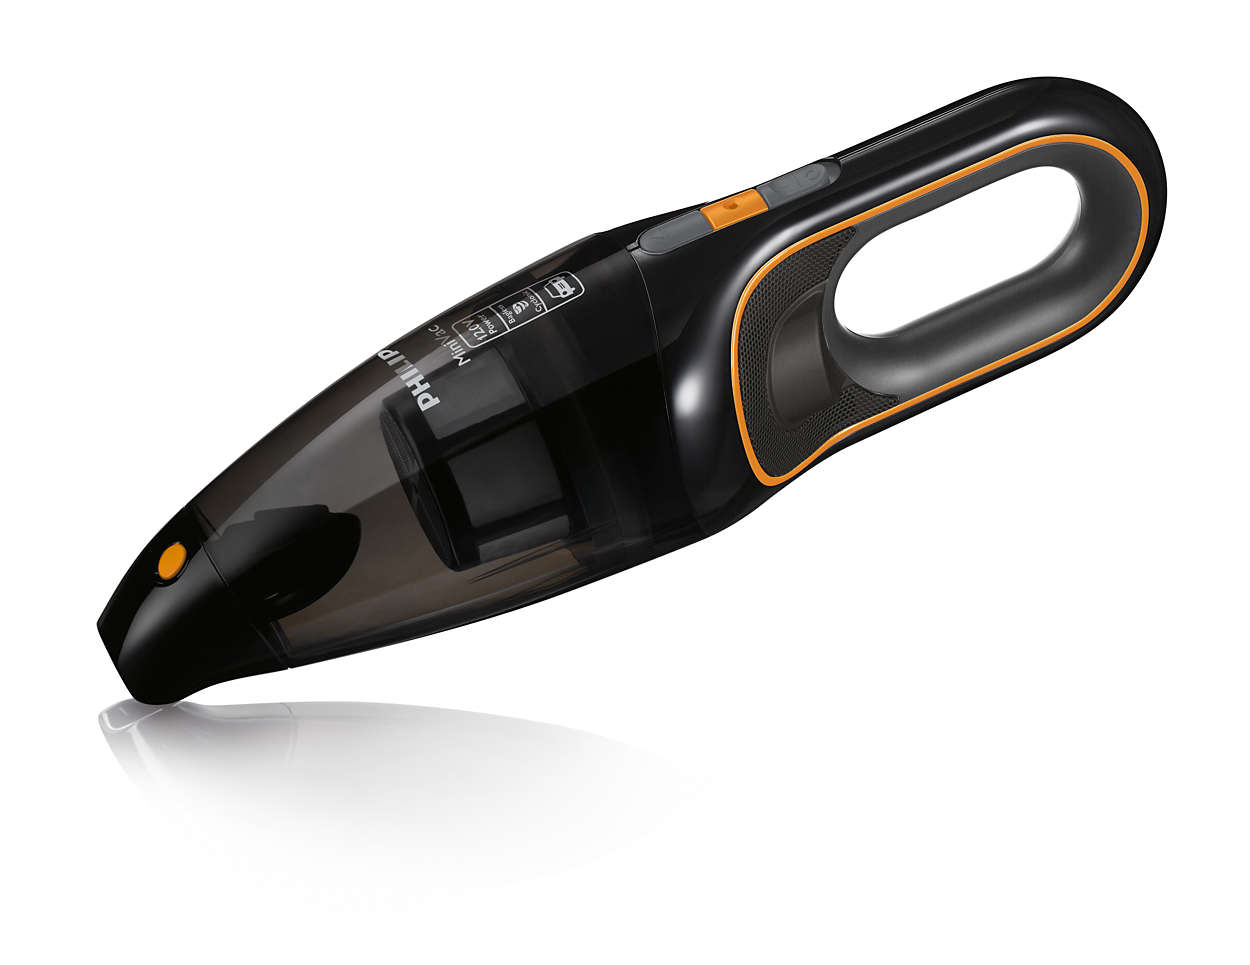 ik ga akkoord met Rust uit keuken MiniVac Handheld vacuum cleaner FC6149/02 | Philips